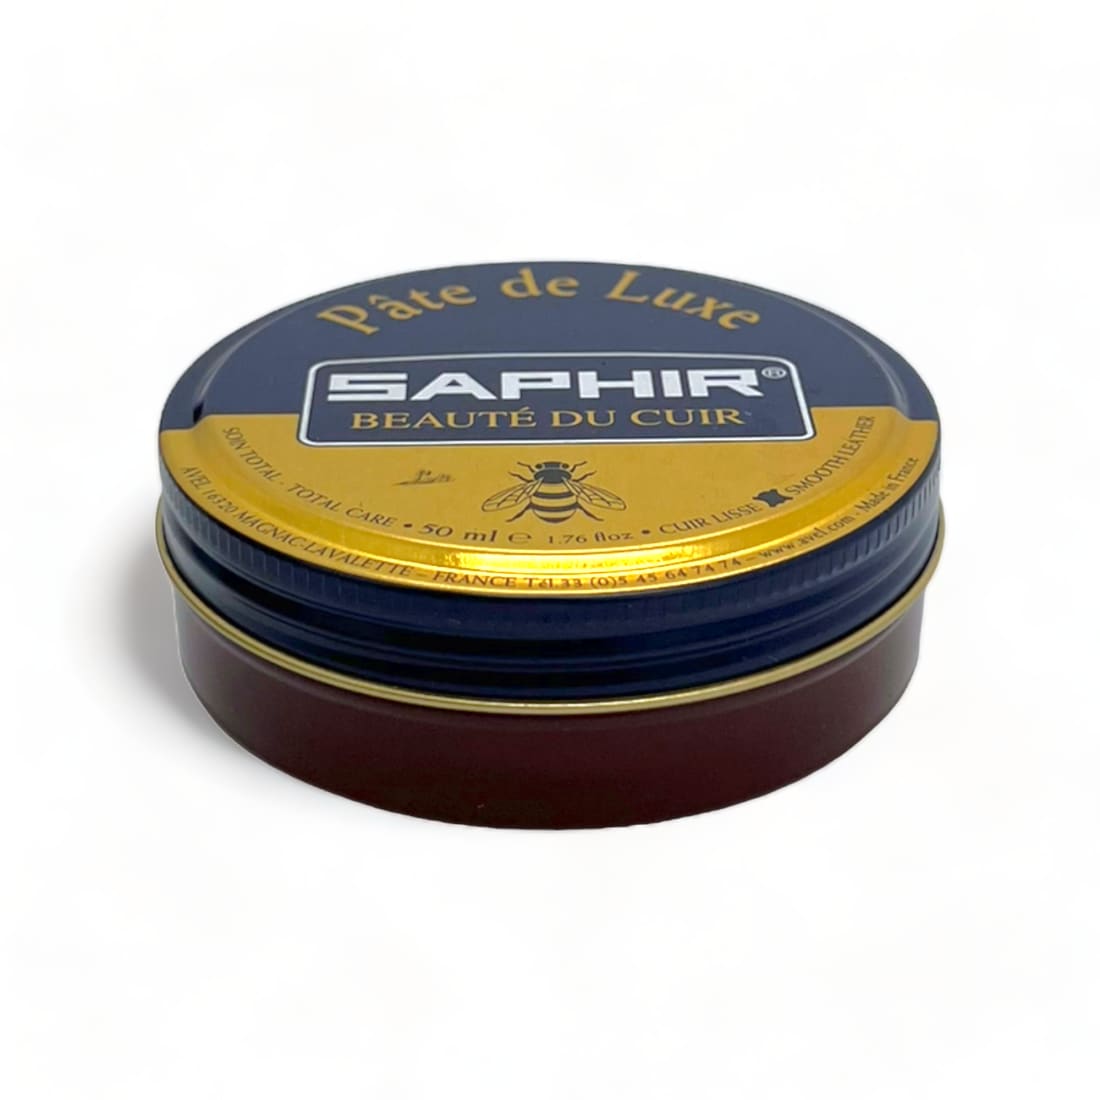 Cirage pâte de luxe Acajou - Saphir - 50 ml - Accessoires